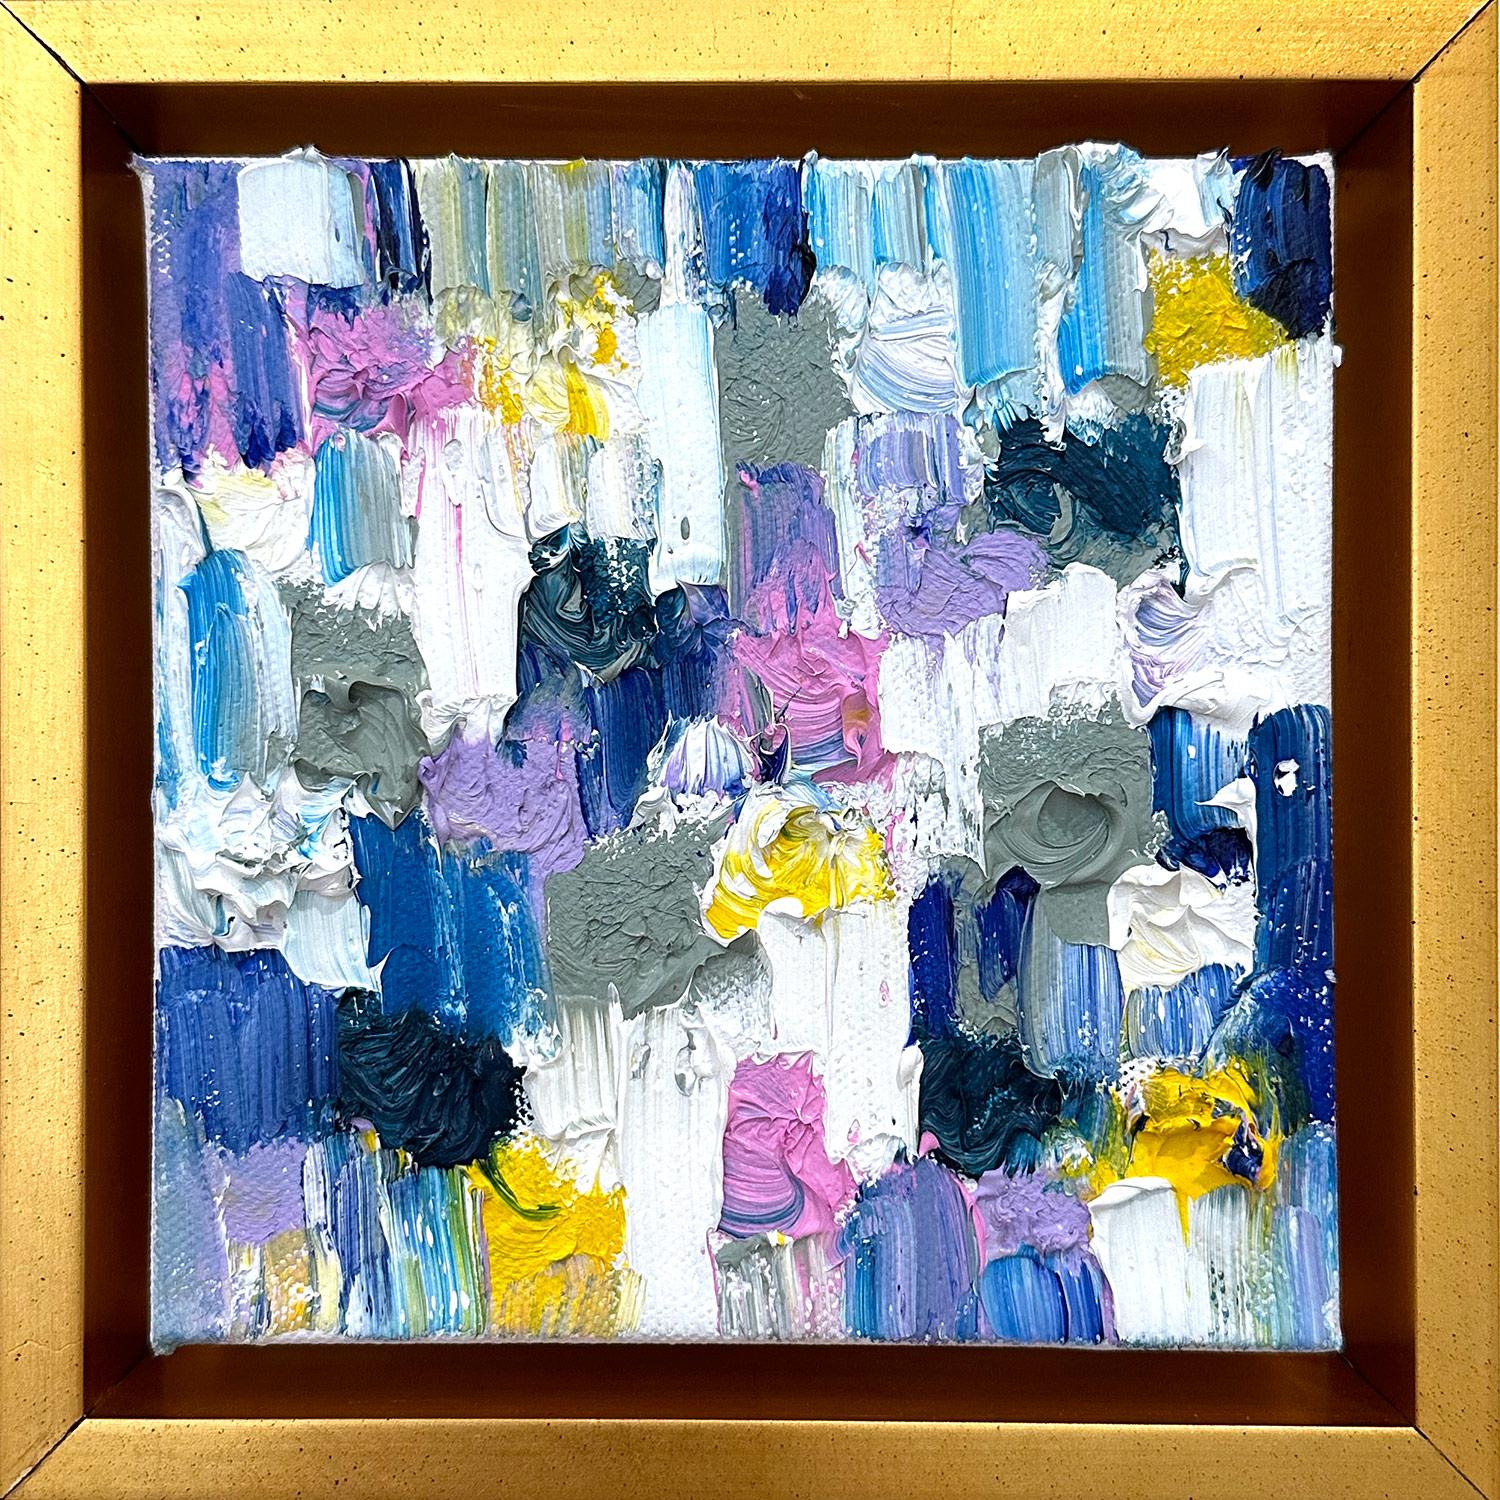 Abstract Painting Cindy Shaoul - "Dripping Dot - Calypso" Peinture à l'huile contemporaine colorée sur toile encadrée